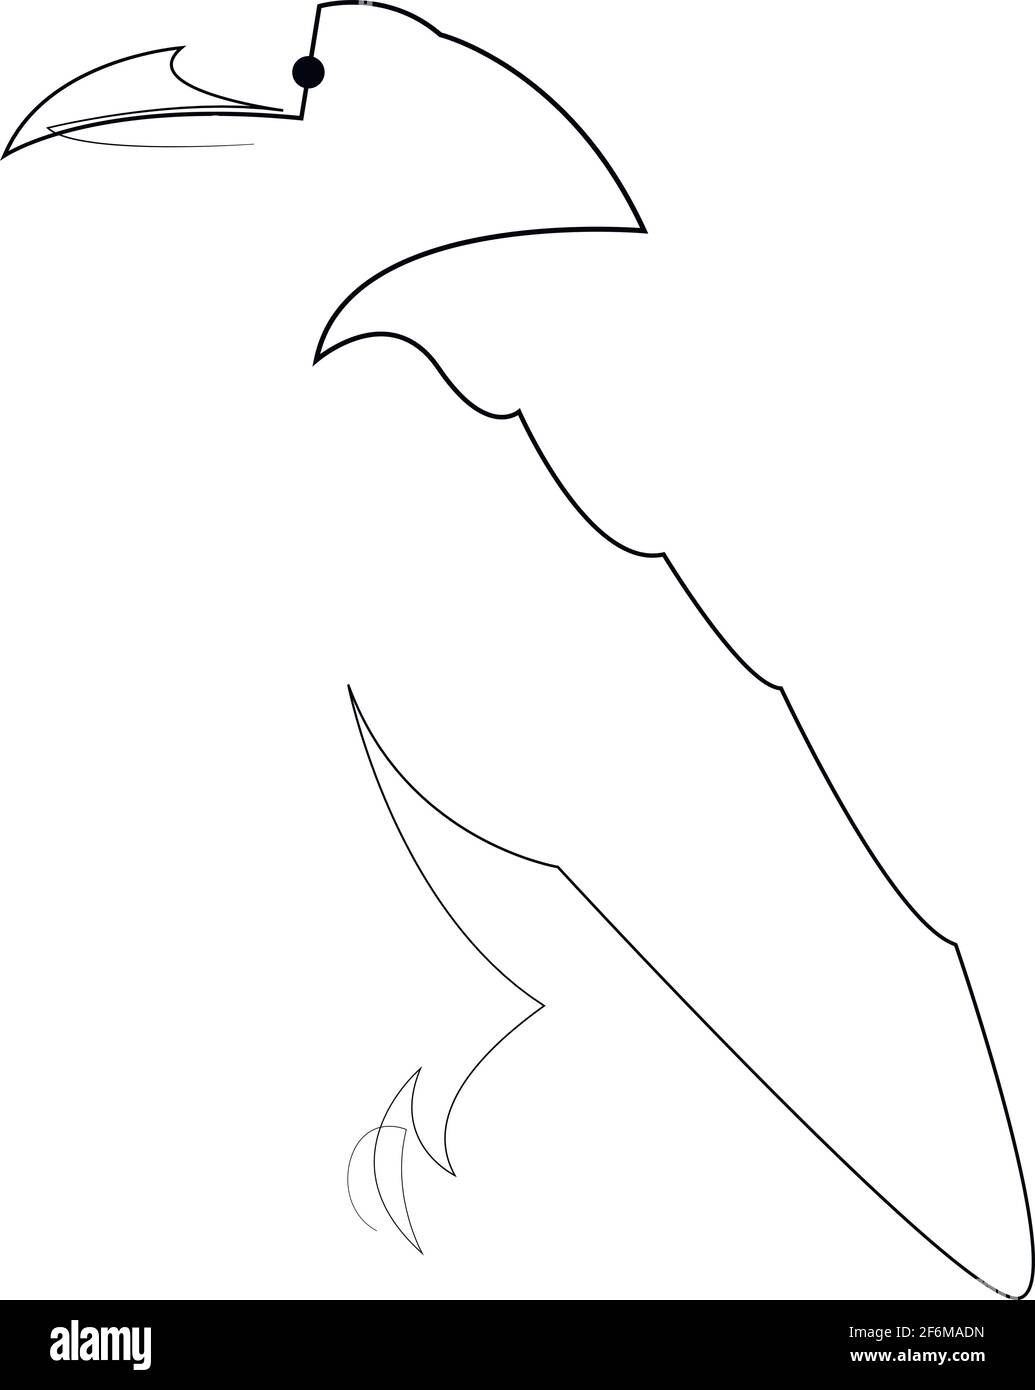 Ligne continue corbeau. Illustration du vecteur de corbeau de style minimal à une seule ligne. Dessin d'oiseau abstrait Illustration de Vecteur